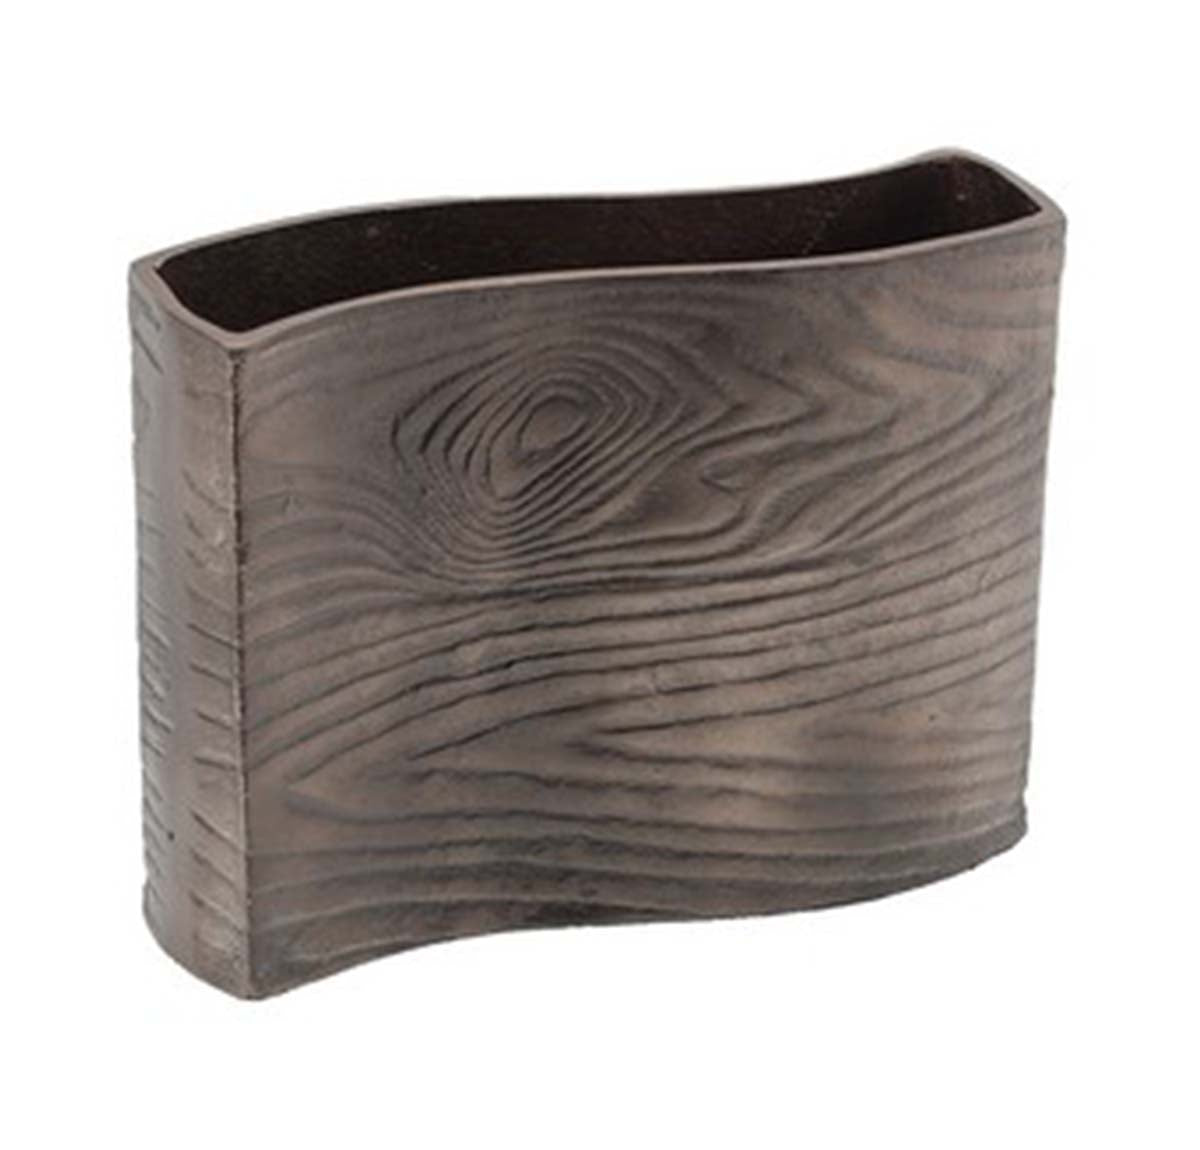 Aluminium Timber Wavy Rectangular Vase - Wenge | Vases & Urns | Home Decor